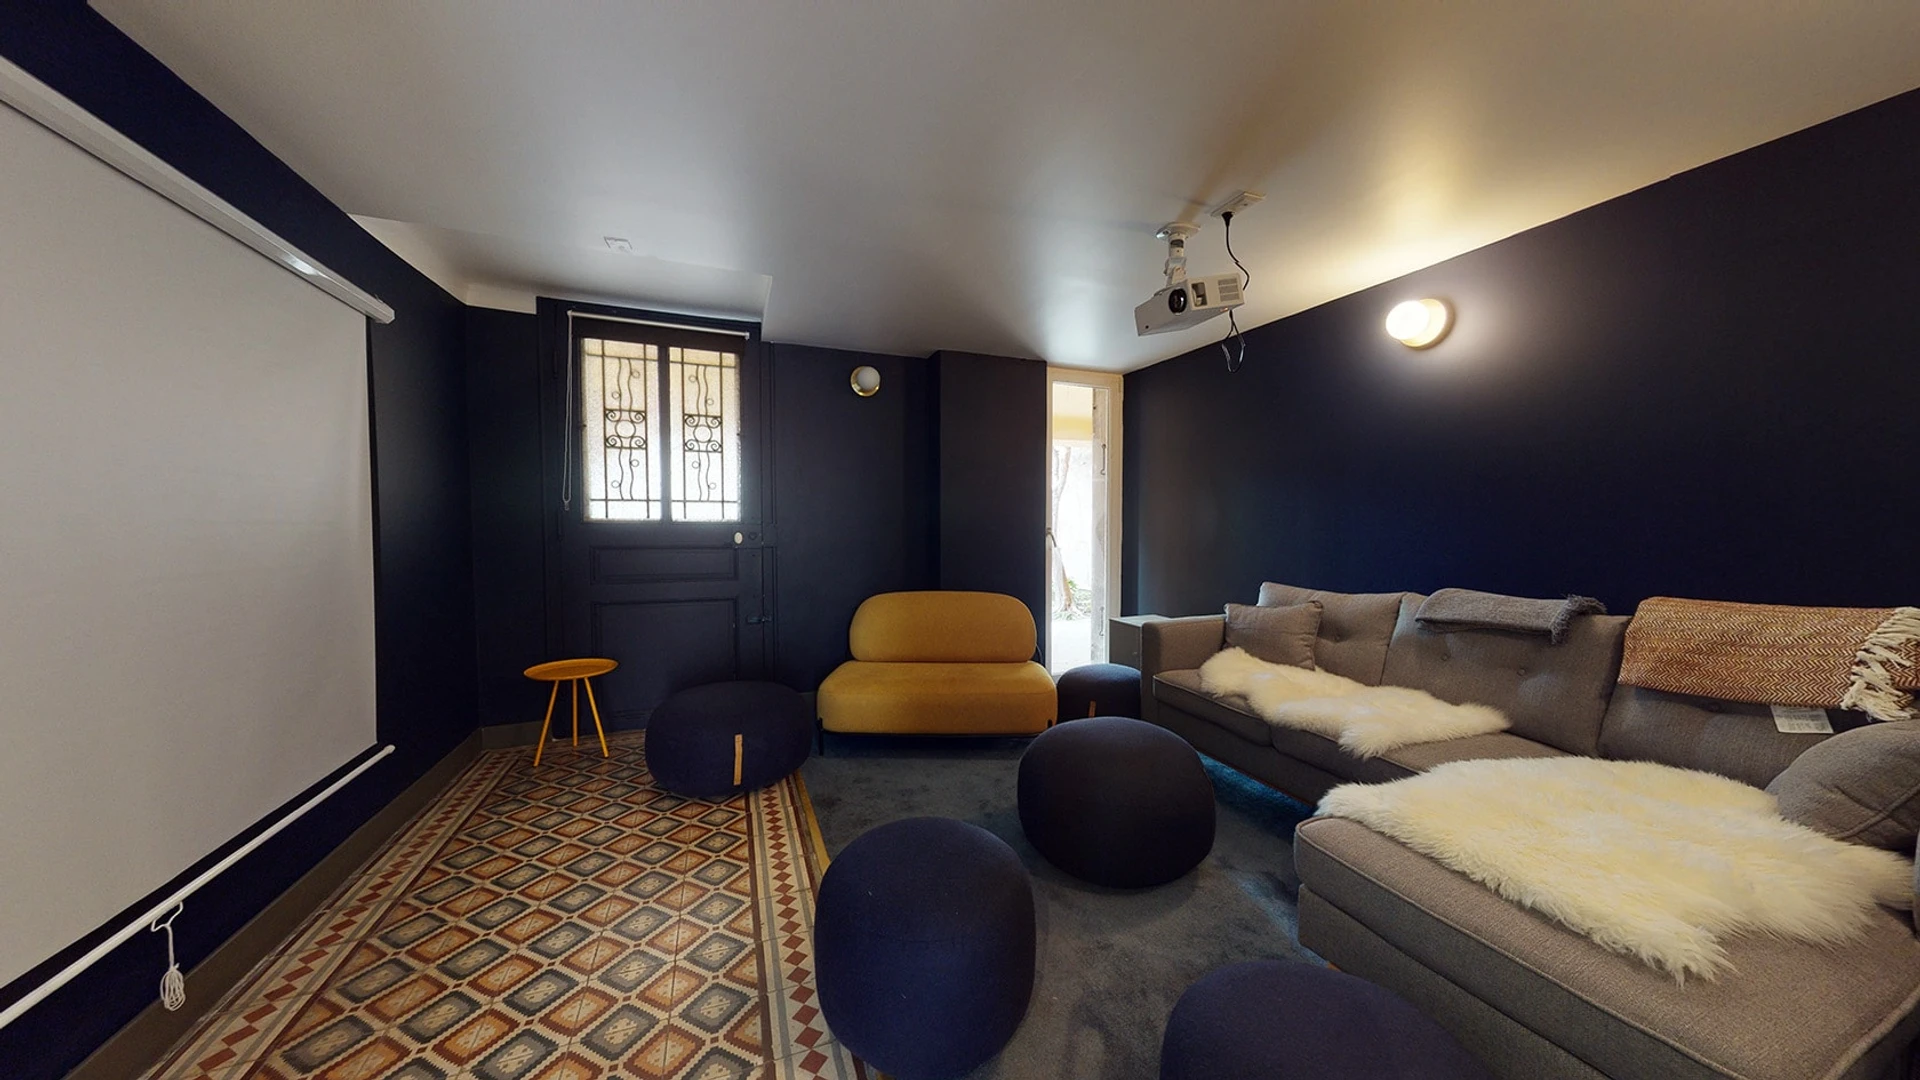 Habitación privada muy luminosa en Marsella